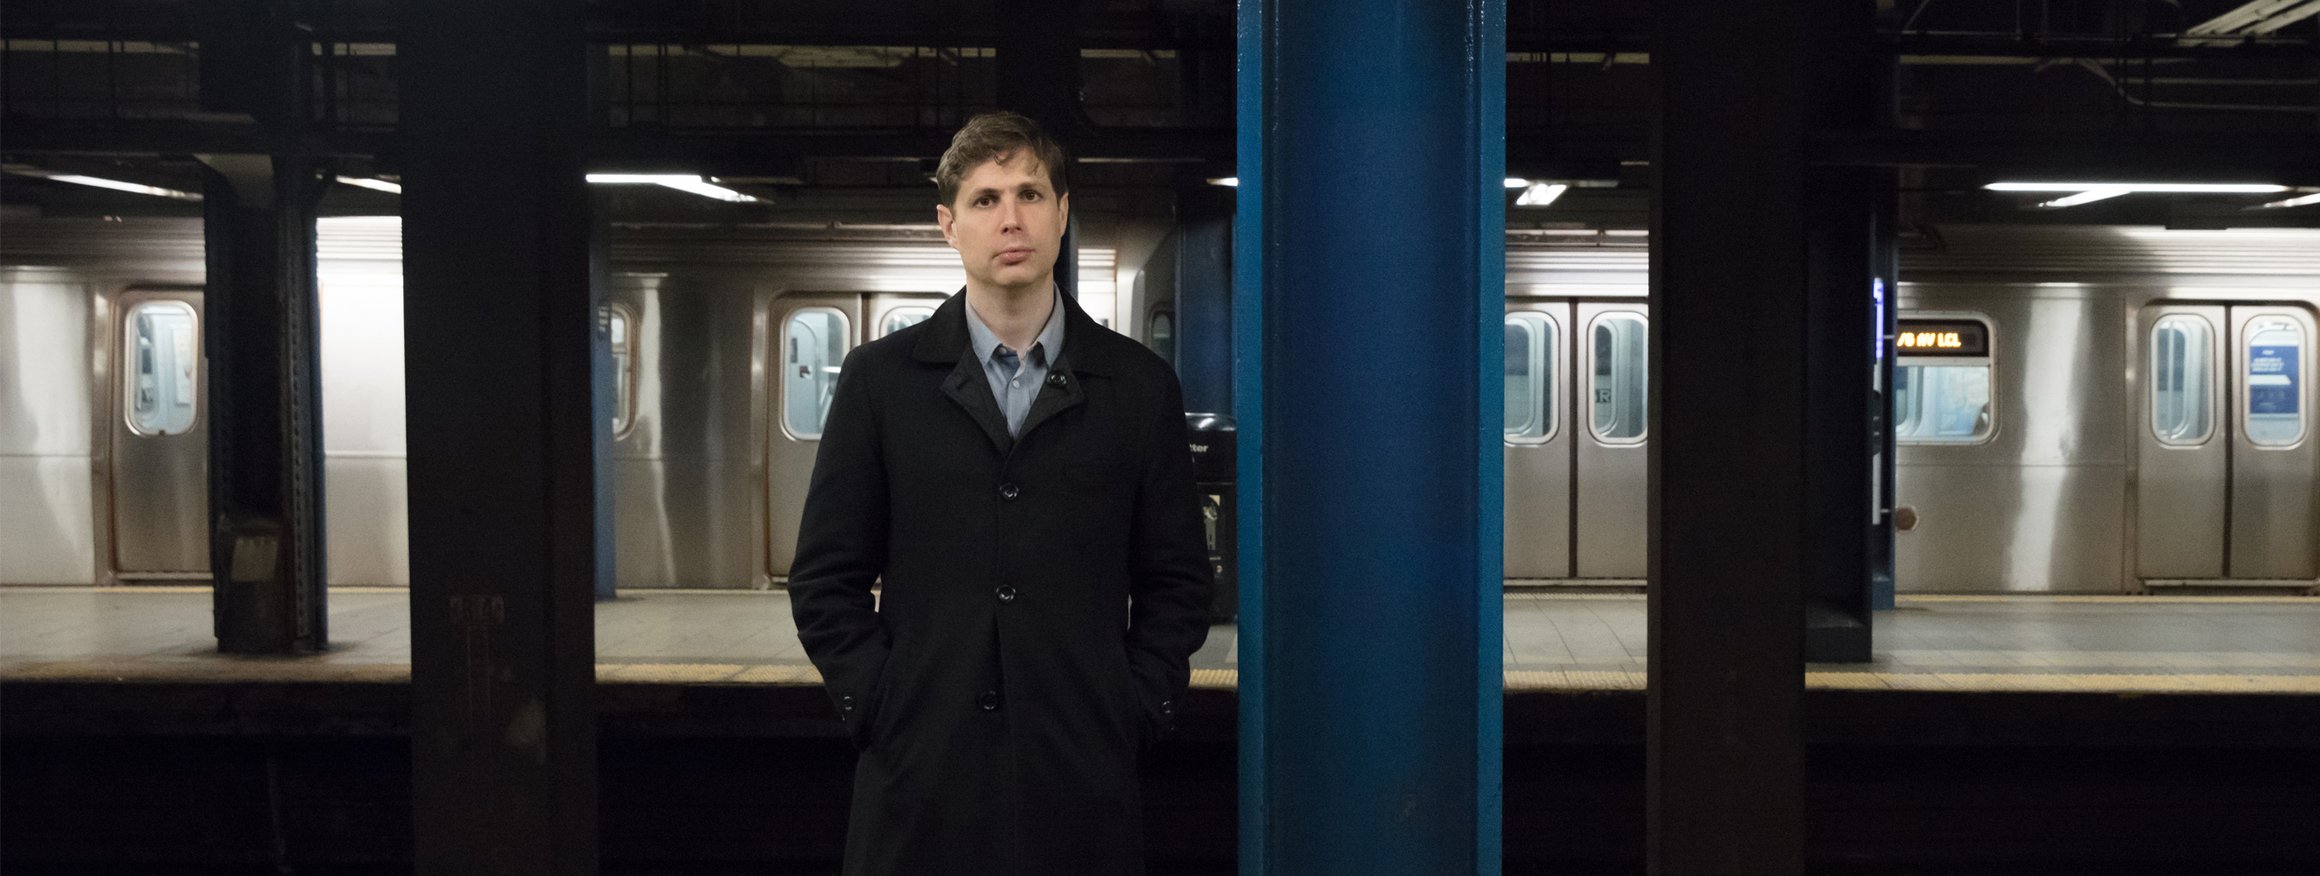 Der Schriftsteller Daniel Kehlmann, einen dunklen Mantel tragend, steht mit den Händen in den Taschen in einer U-Bahn-Station